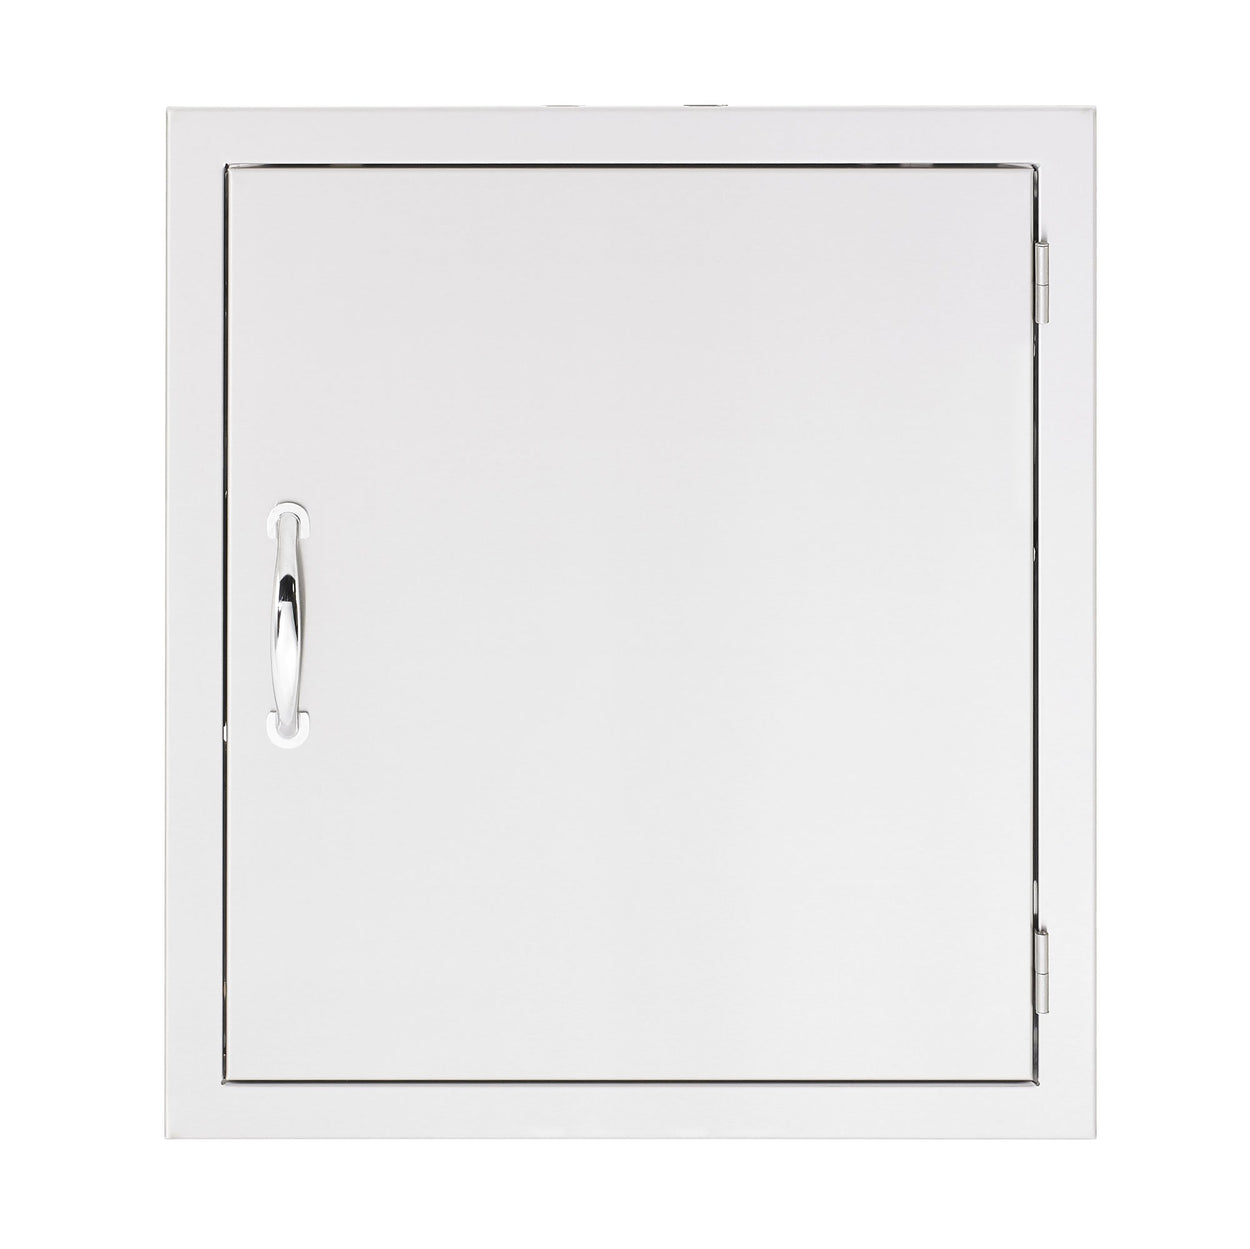 18x20" Horizontal Access Door